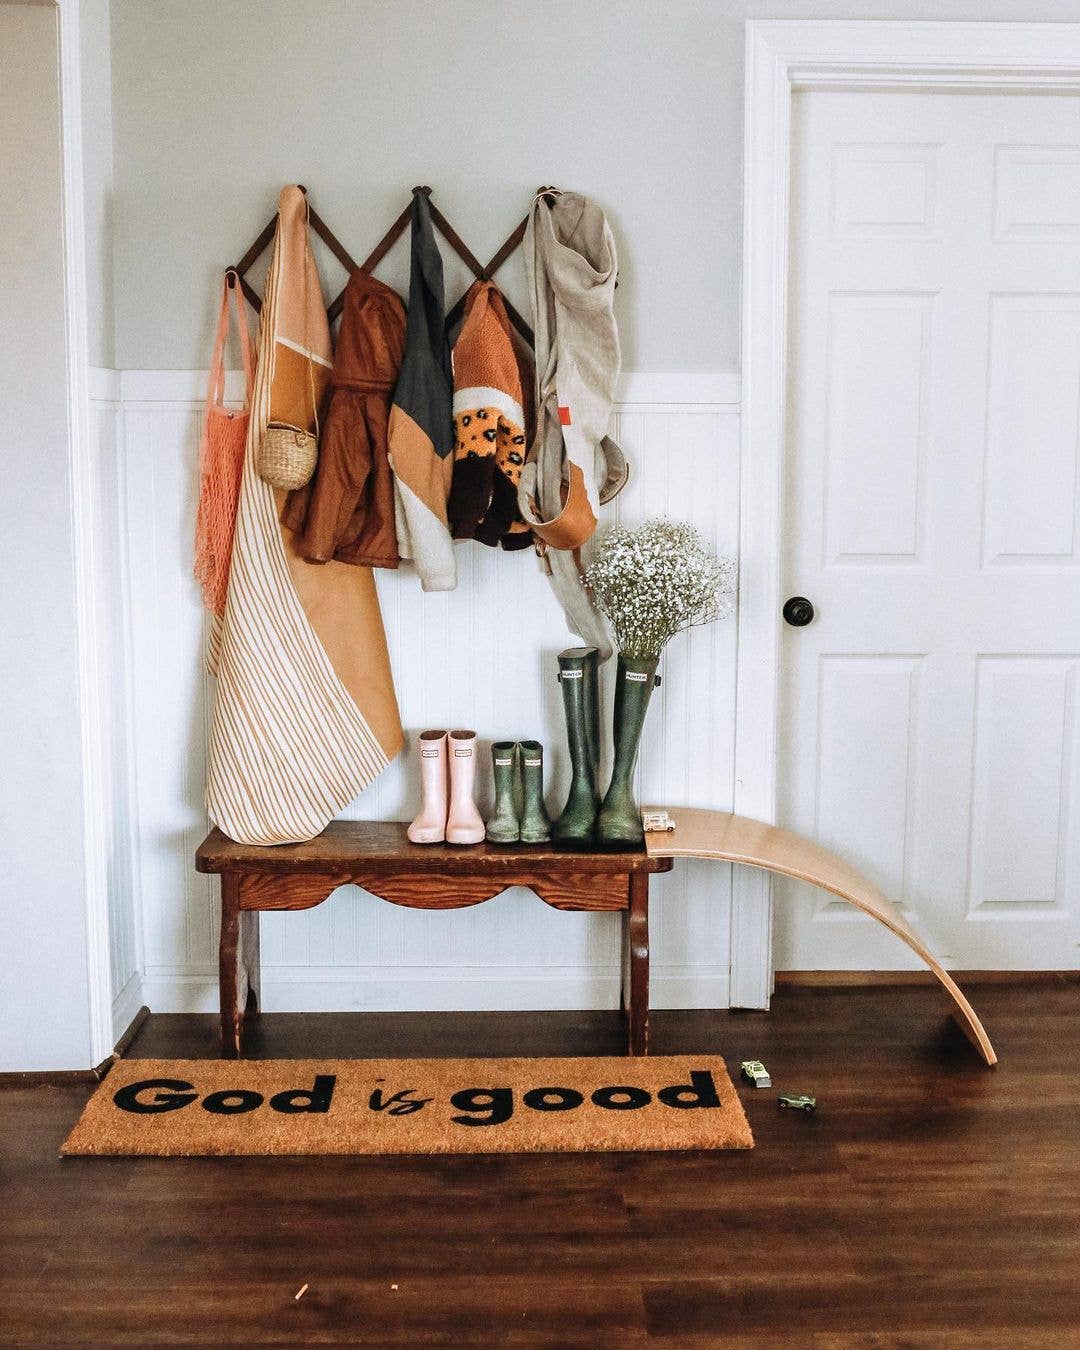 XL Doormat - God is good (New Length)